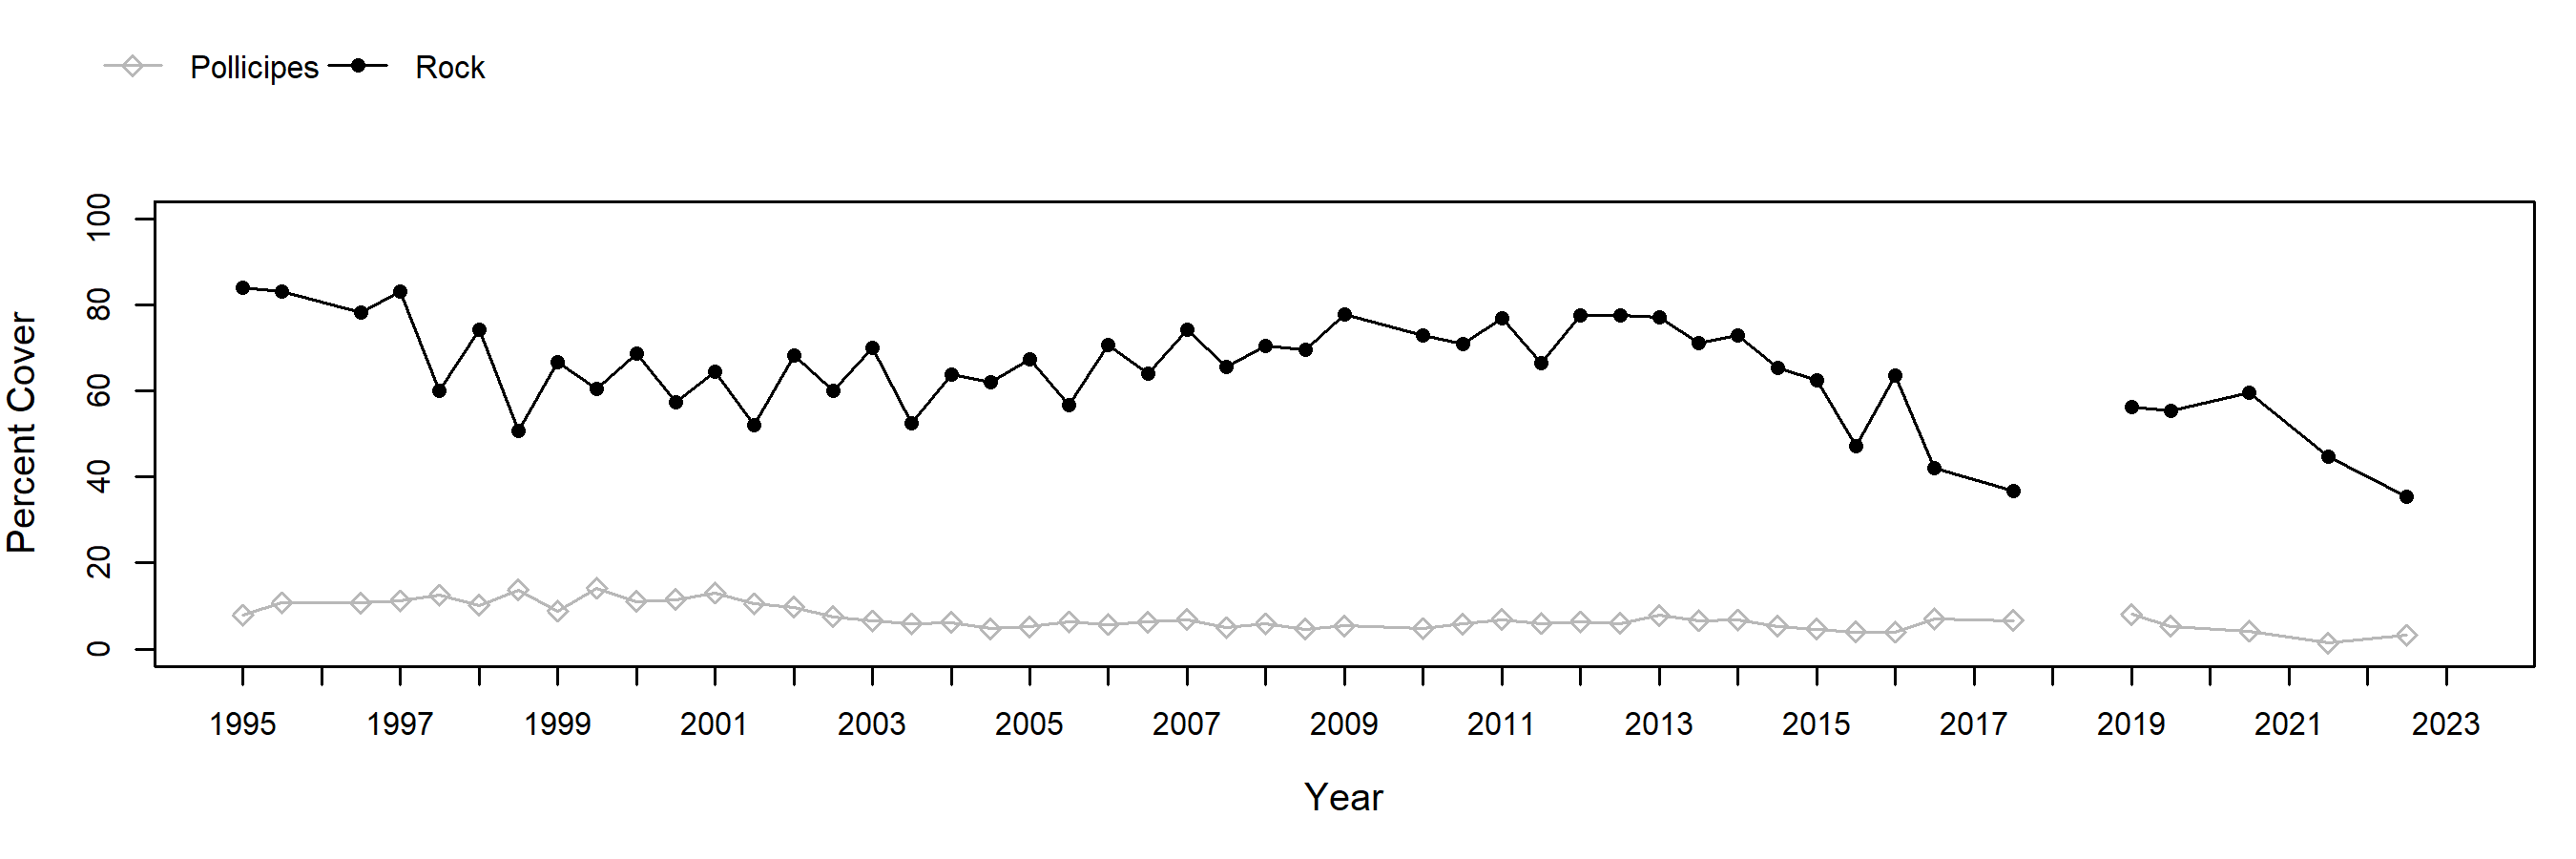 Cabrillo II Pollicipes trend plot